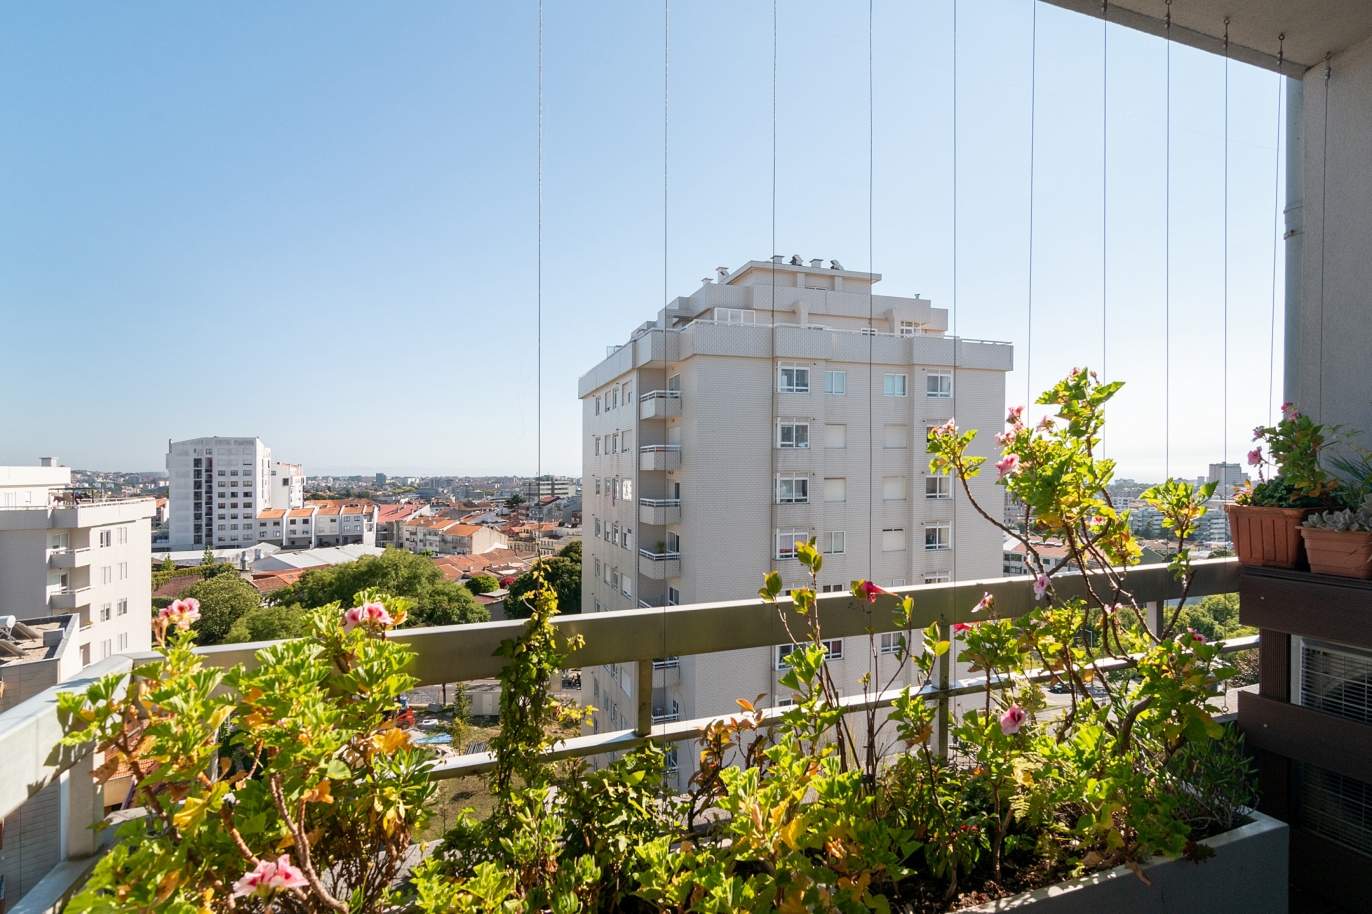 Apartamento com varanda, para venda, na Boavista, Porto, Portugal_177606